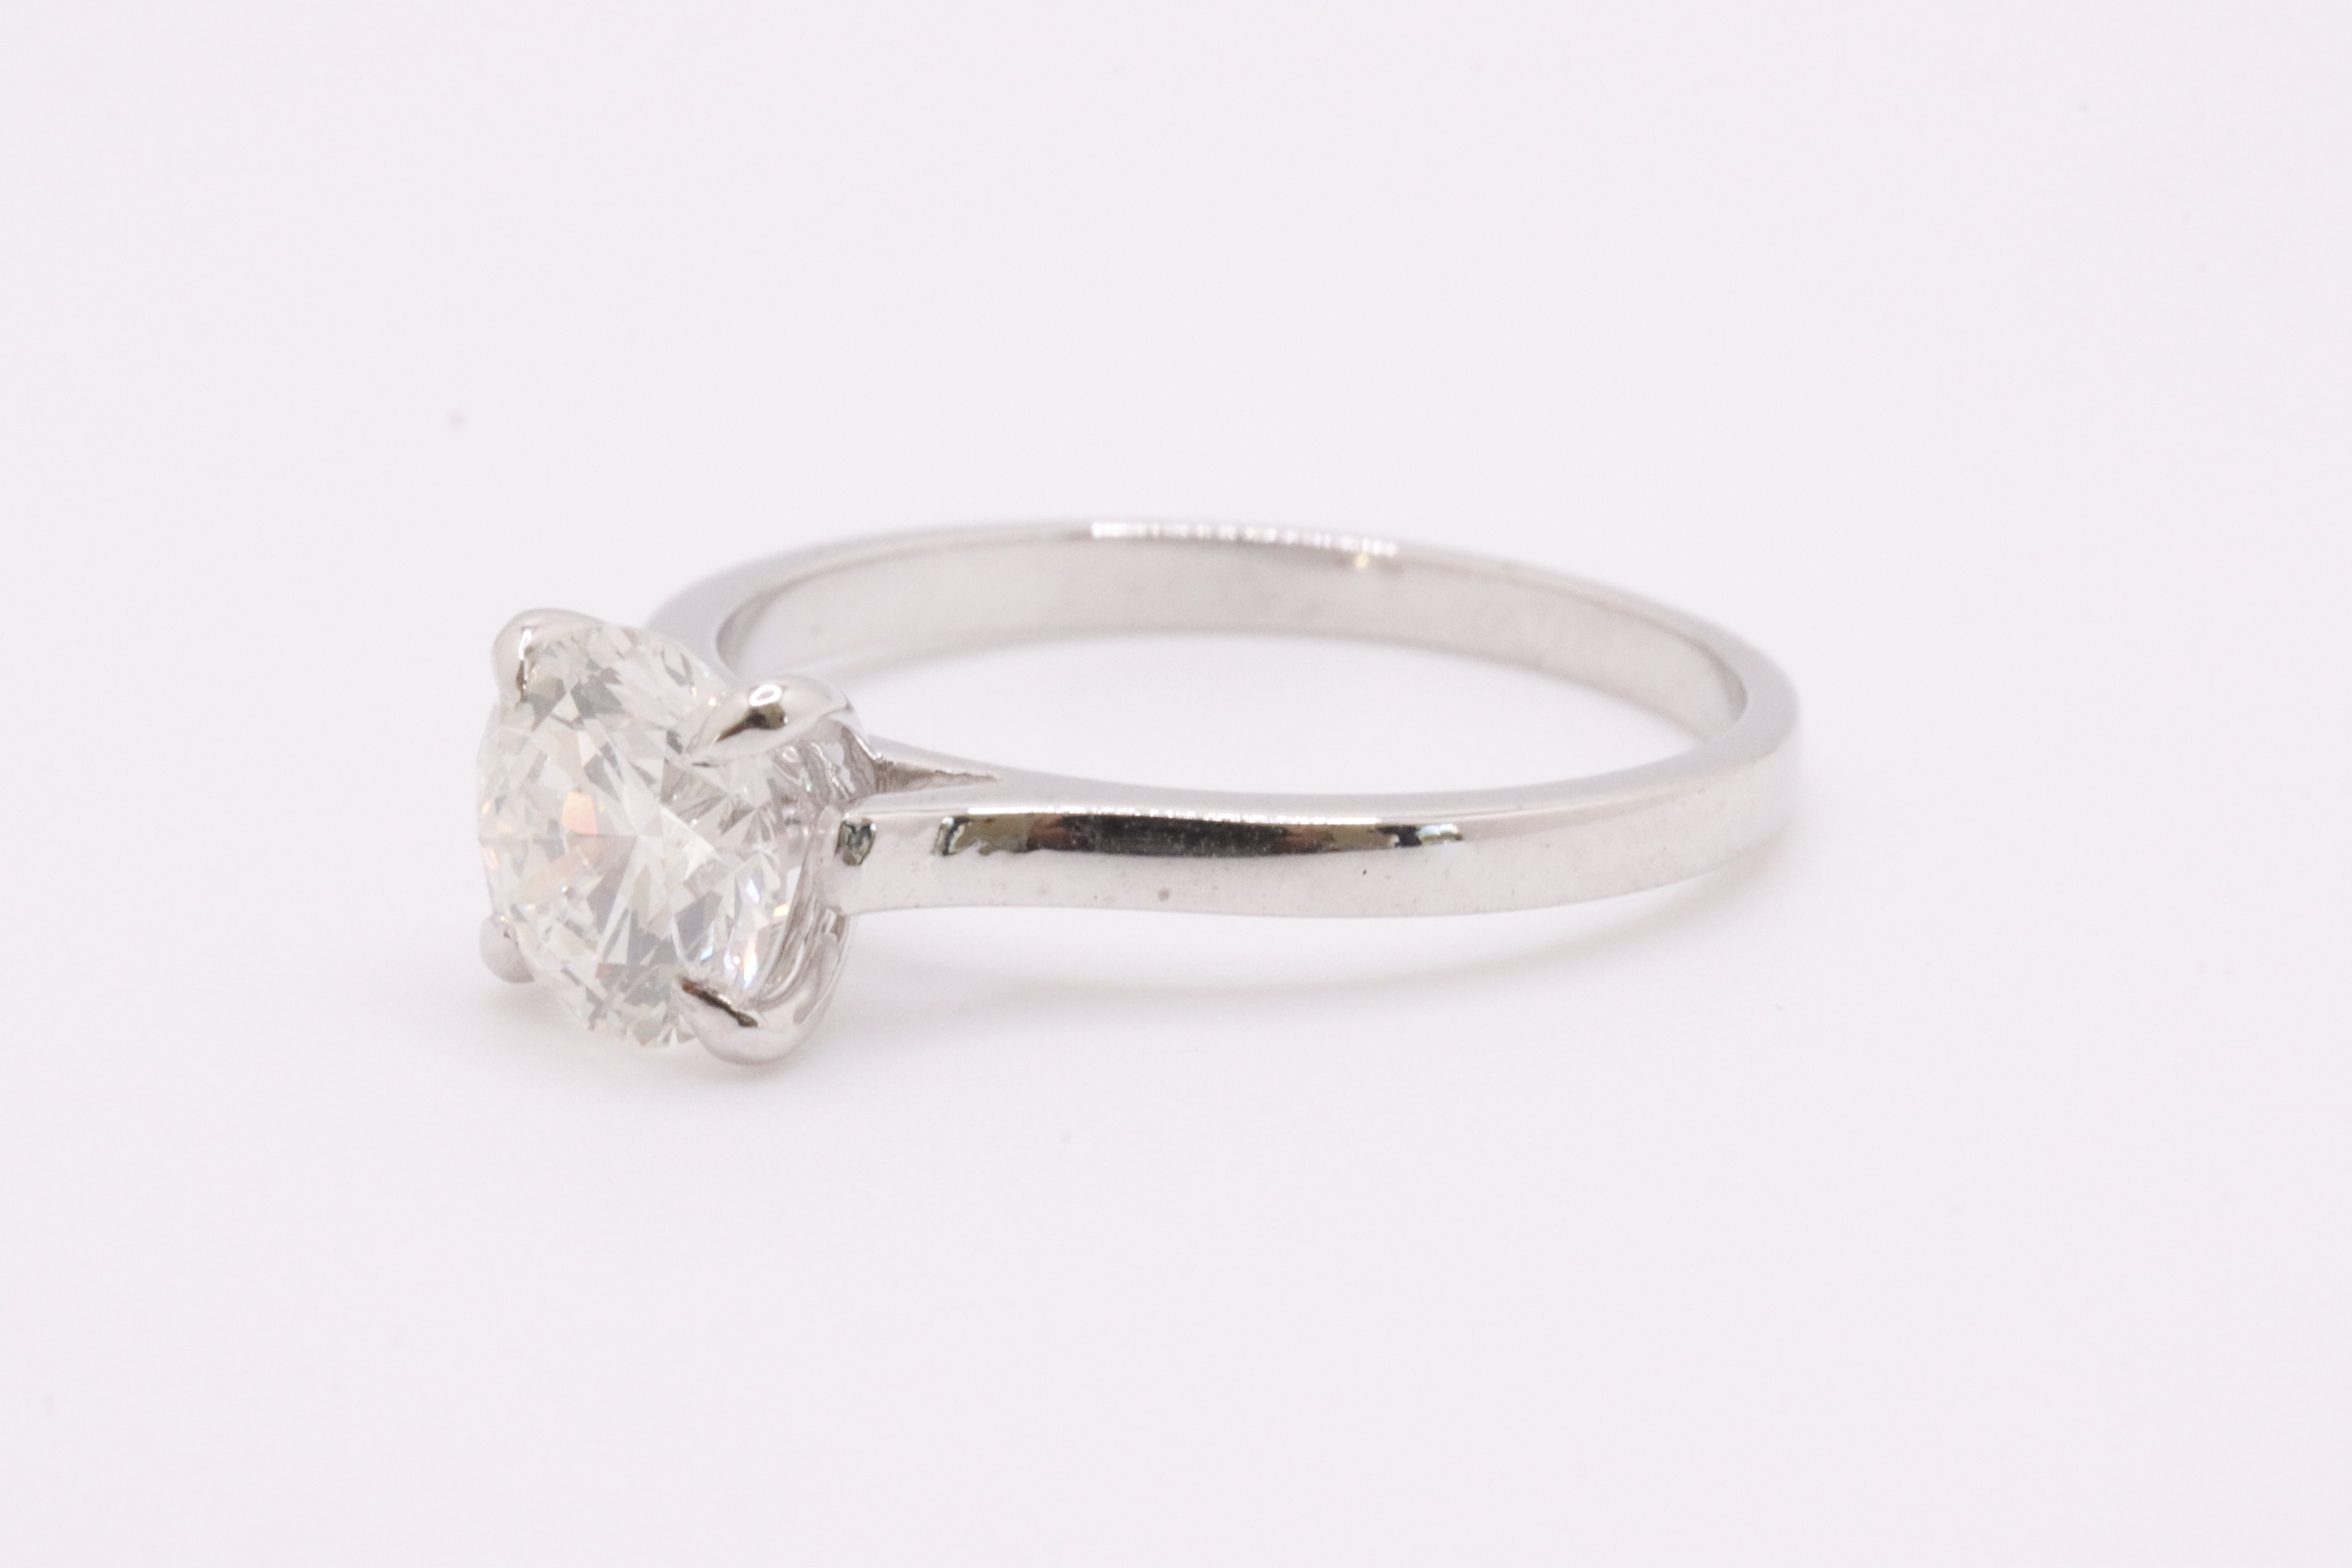 Round Brilliant Cut Natural Diamond Ring 1.09 Carat I Colour SI2 Clarity EX EX EX - GIA - Image 8 of 10